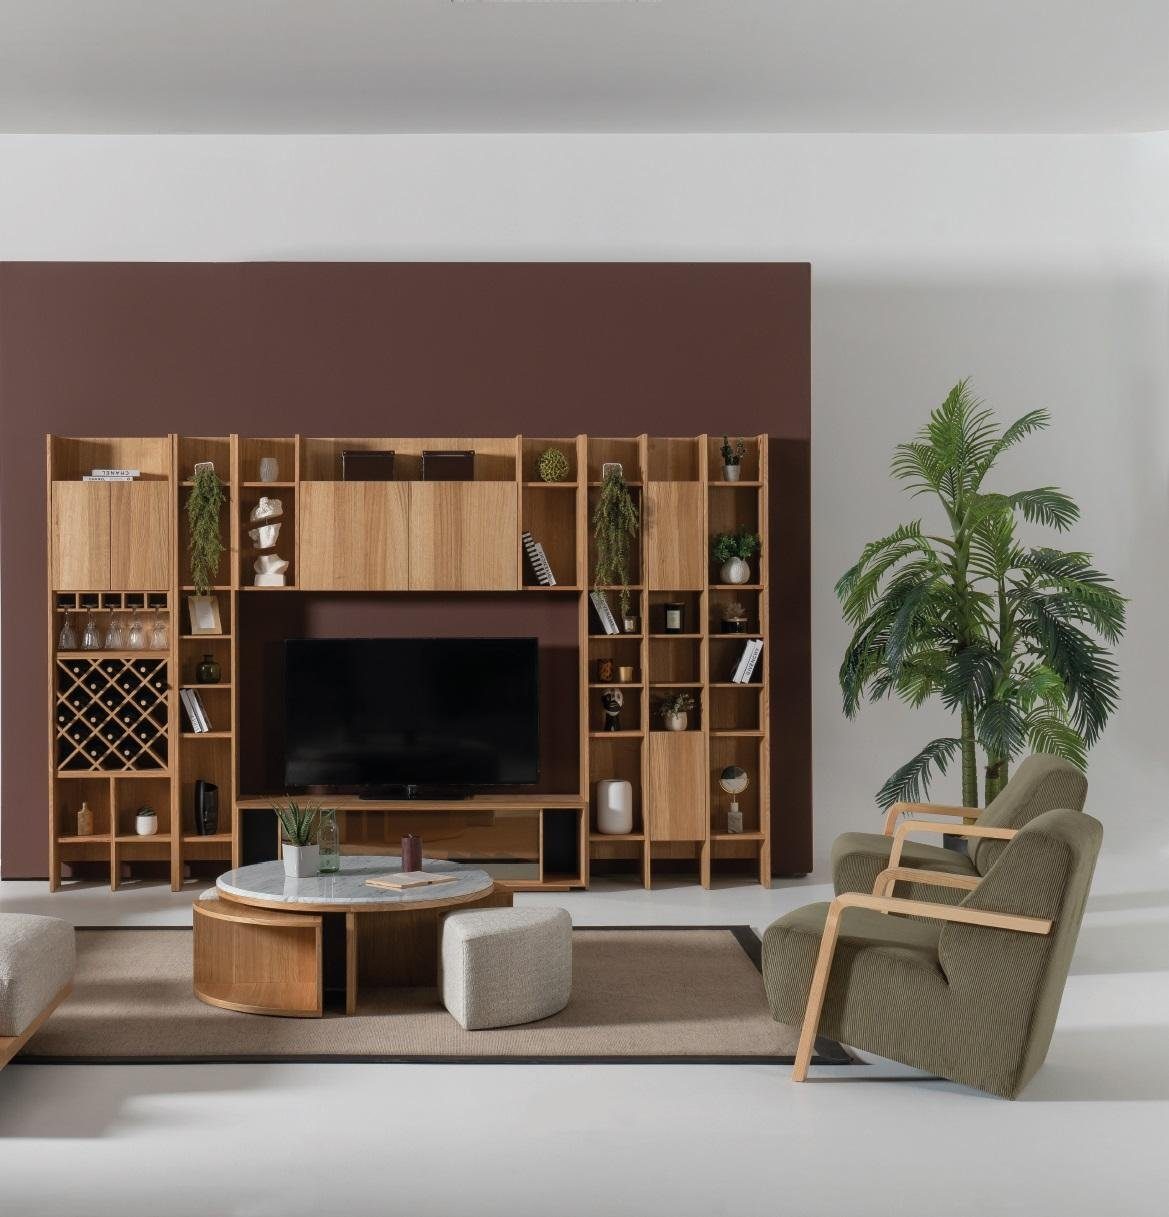 Möbel Couchtisch, Modern WohnZimmer Design Tisch Einrichtung Couchtisch Luxus JVmoebel